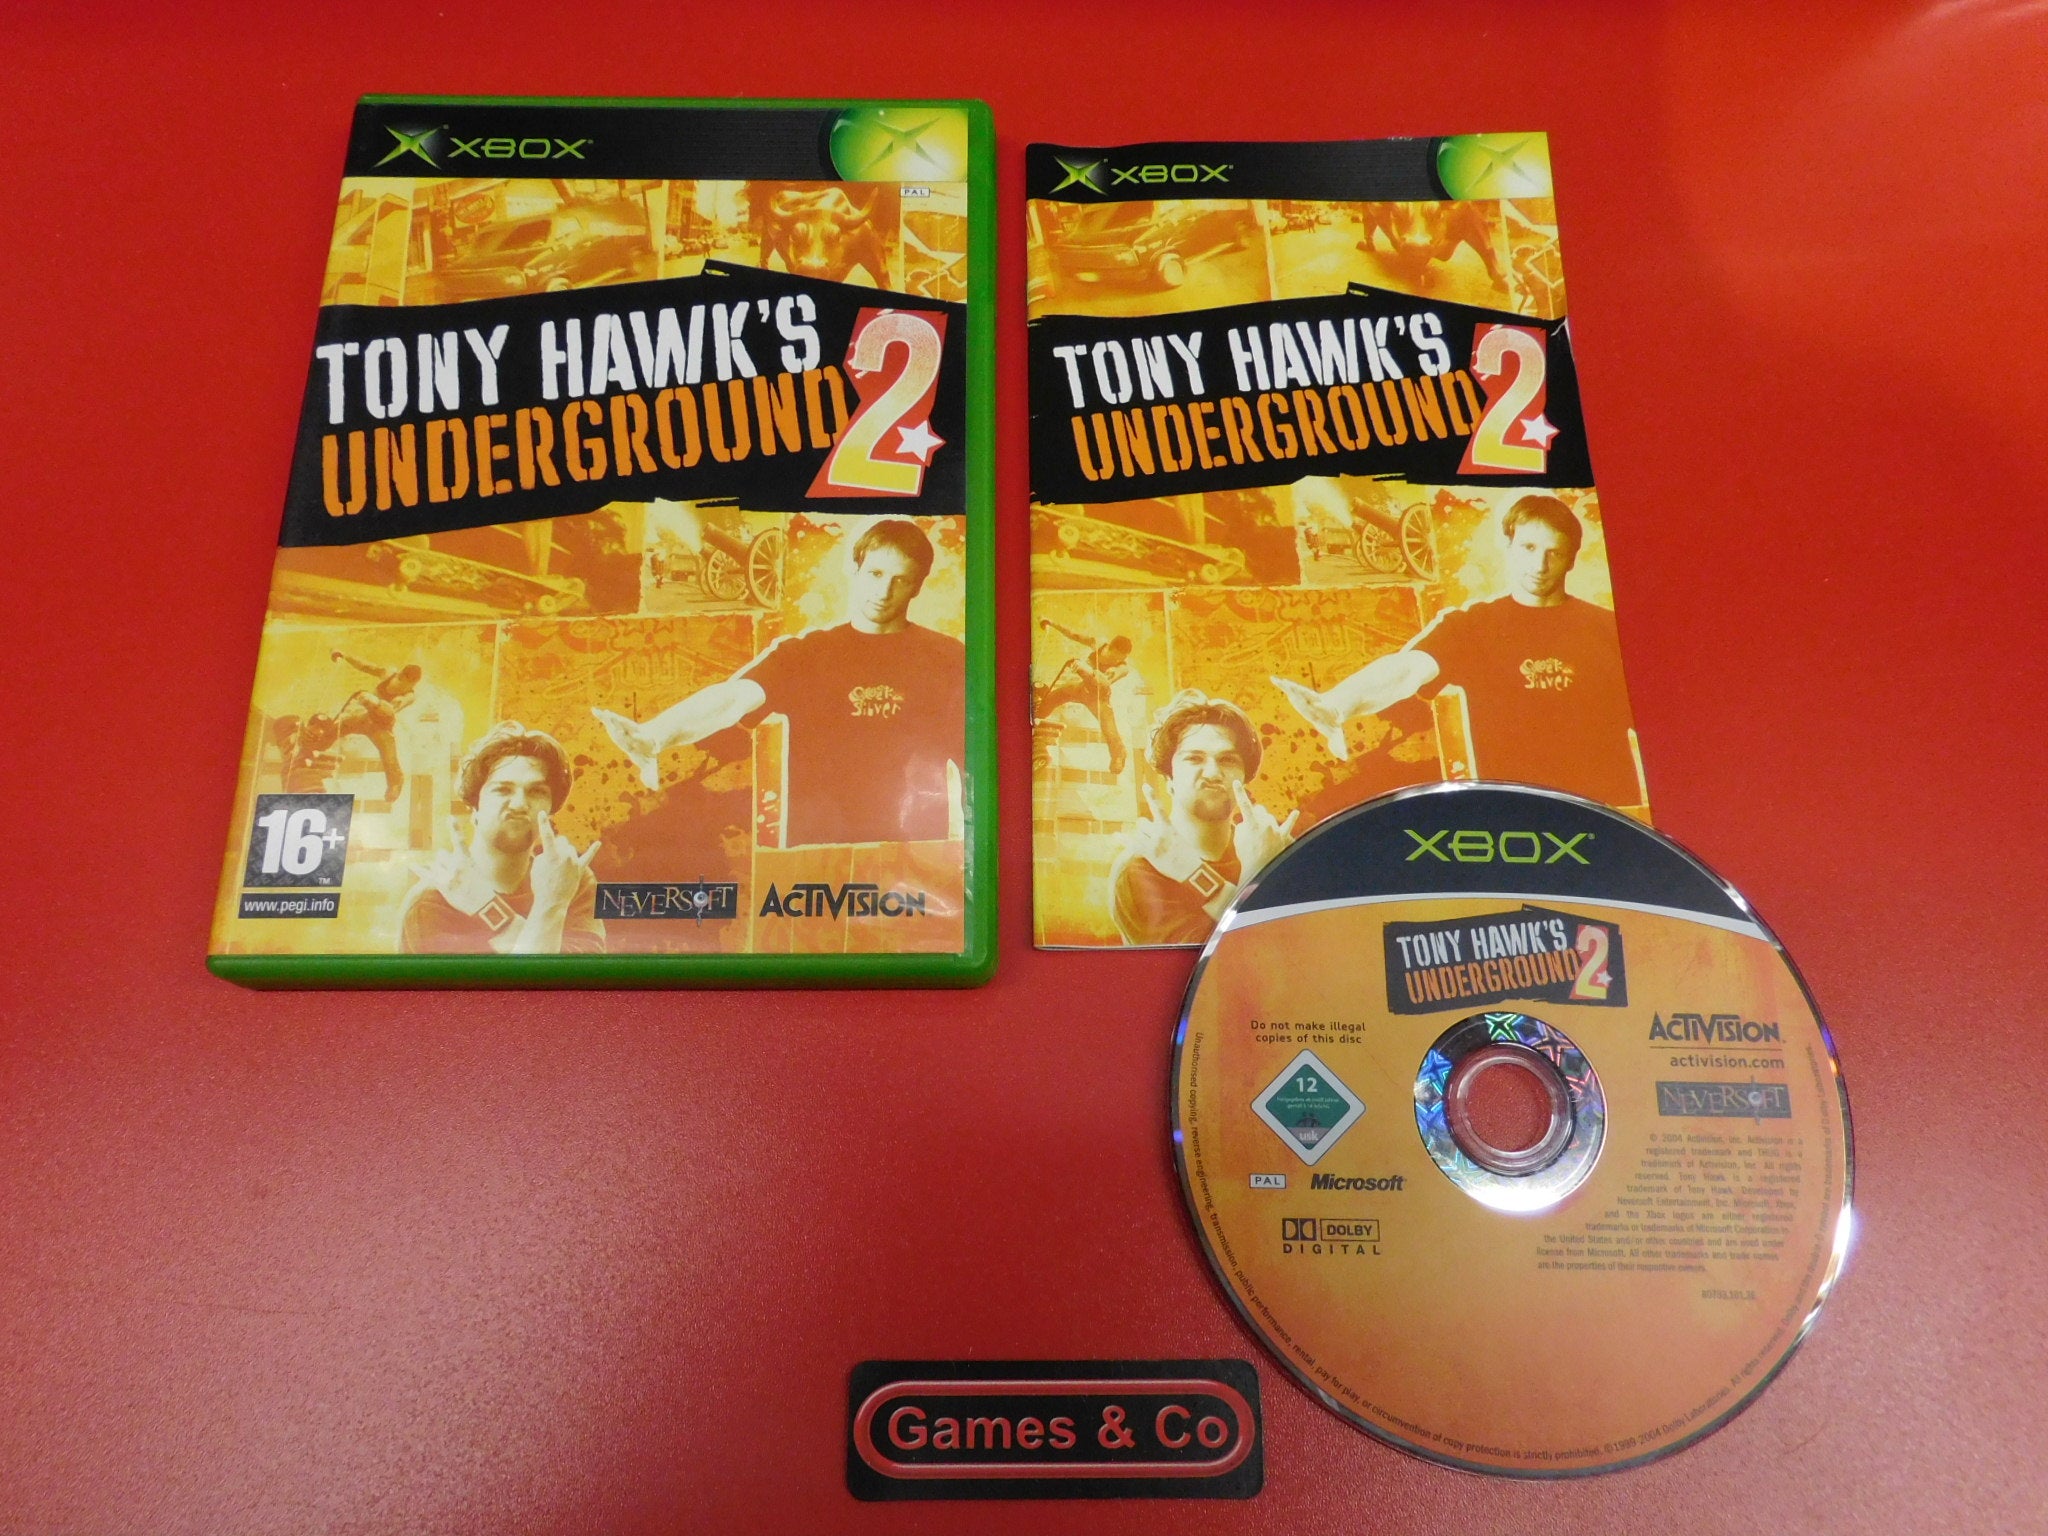 TONY HAWK'S UNDERGROUND 2